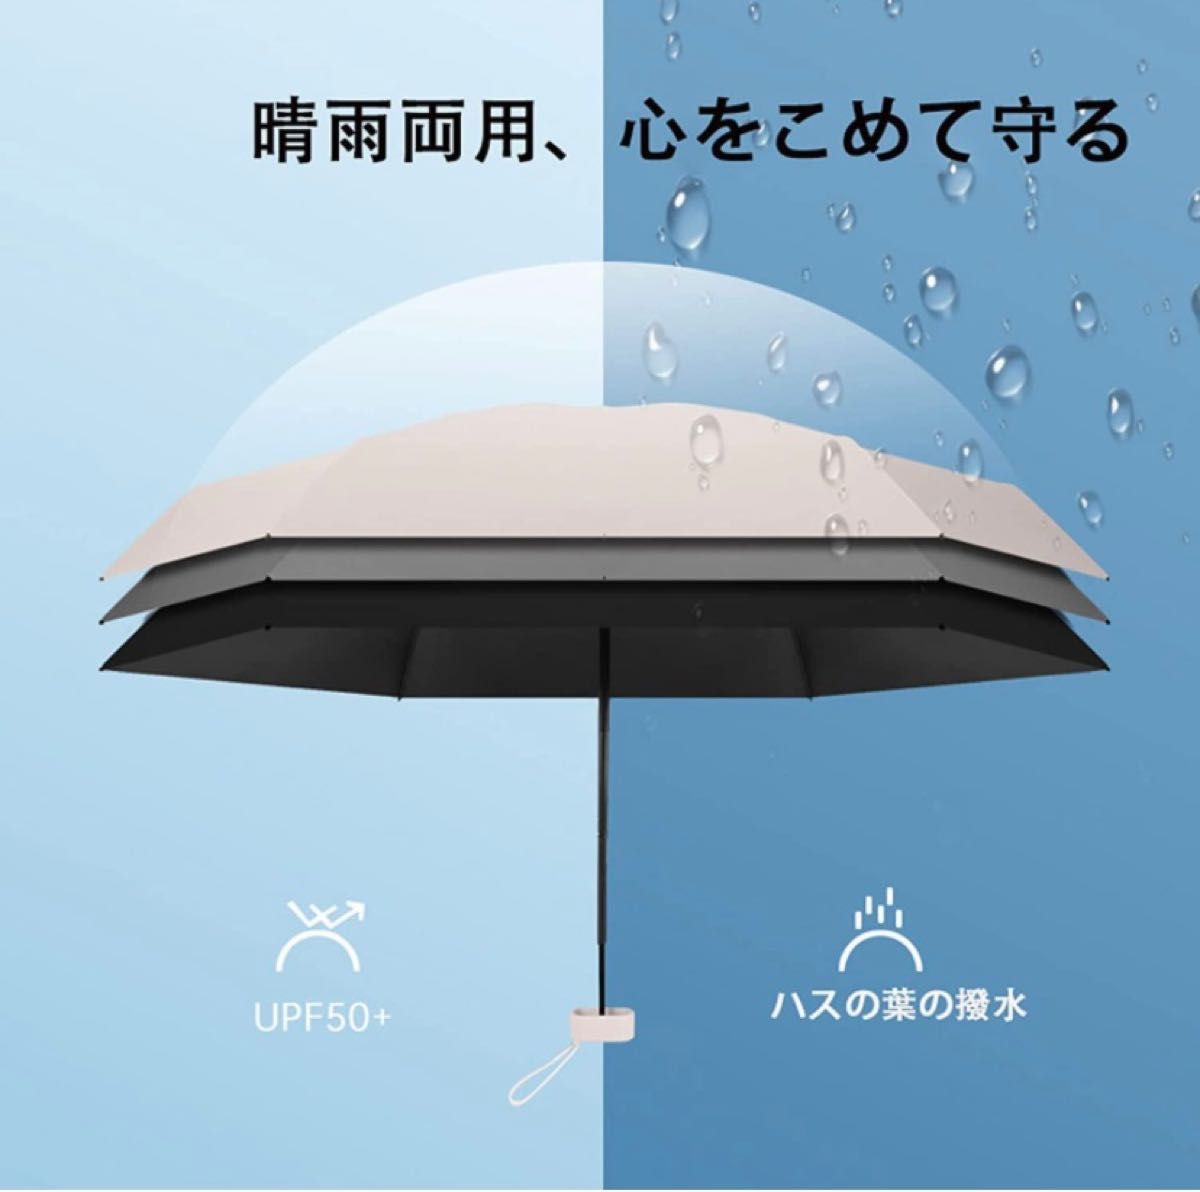 折り畳み傘 超軽量 ミニおりたたみ傘 携帯便利 収納ポーチ付き可愛い 晴雨兼用 UPF50+ UV遮蔽率100%折りたたみ傘